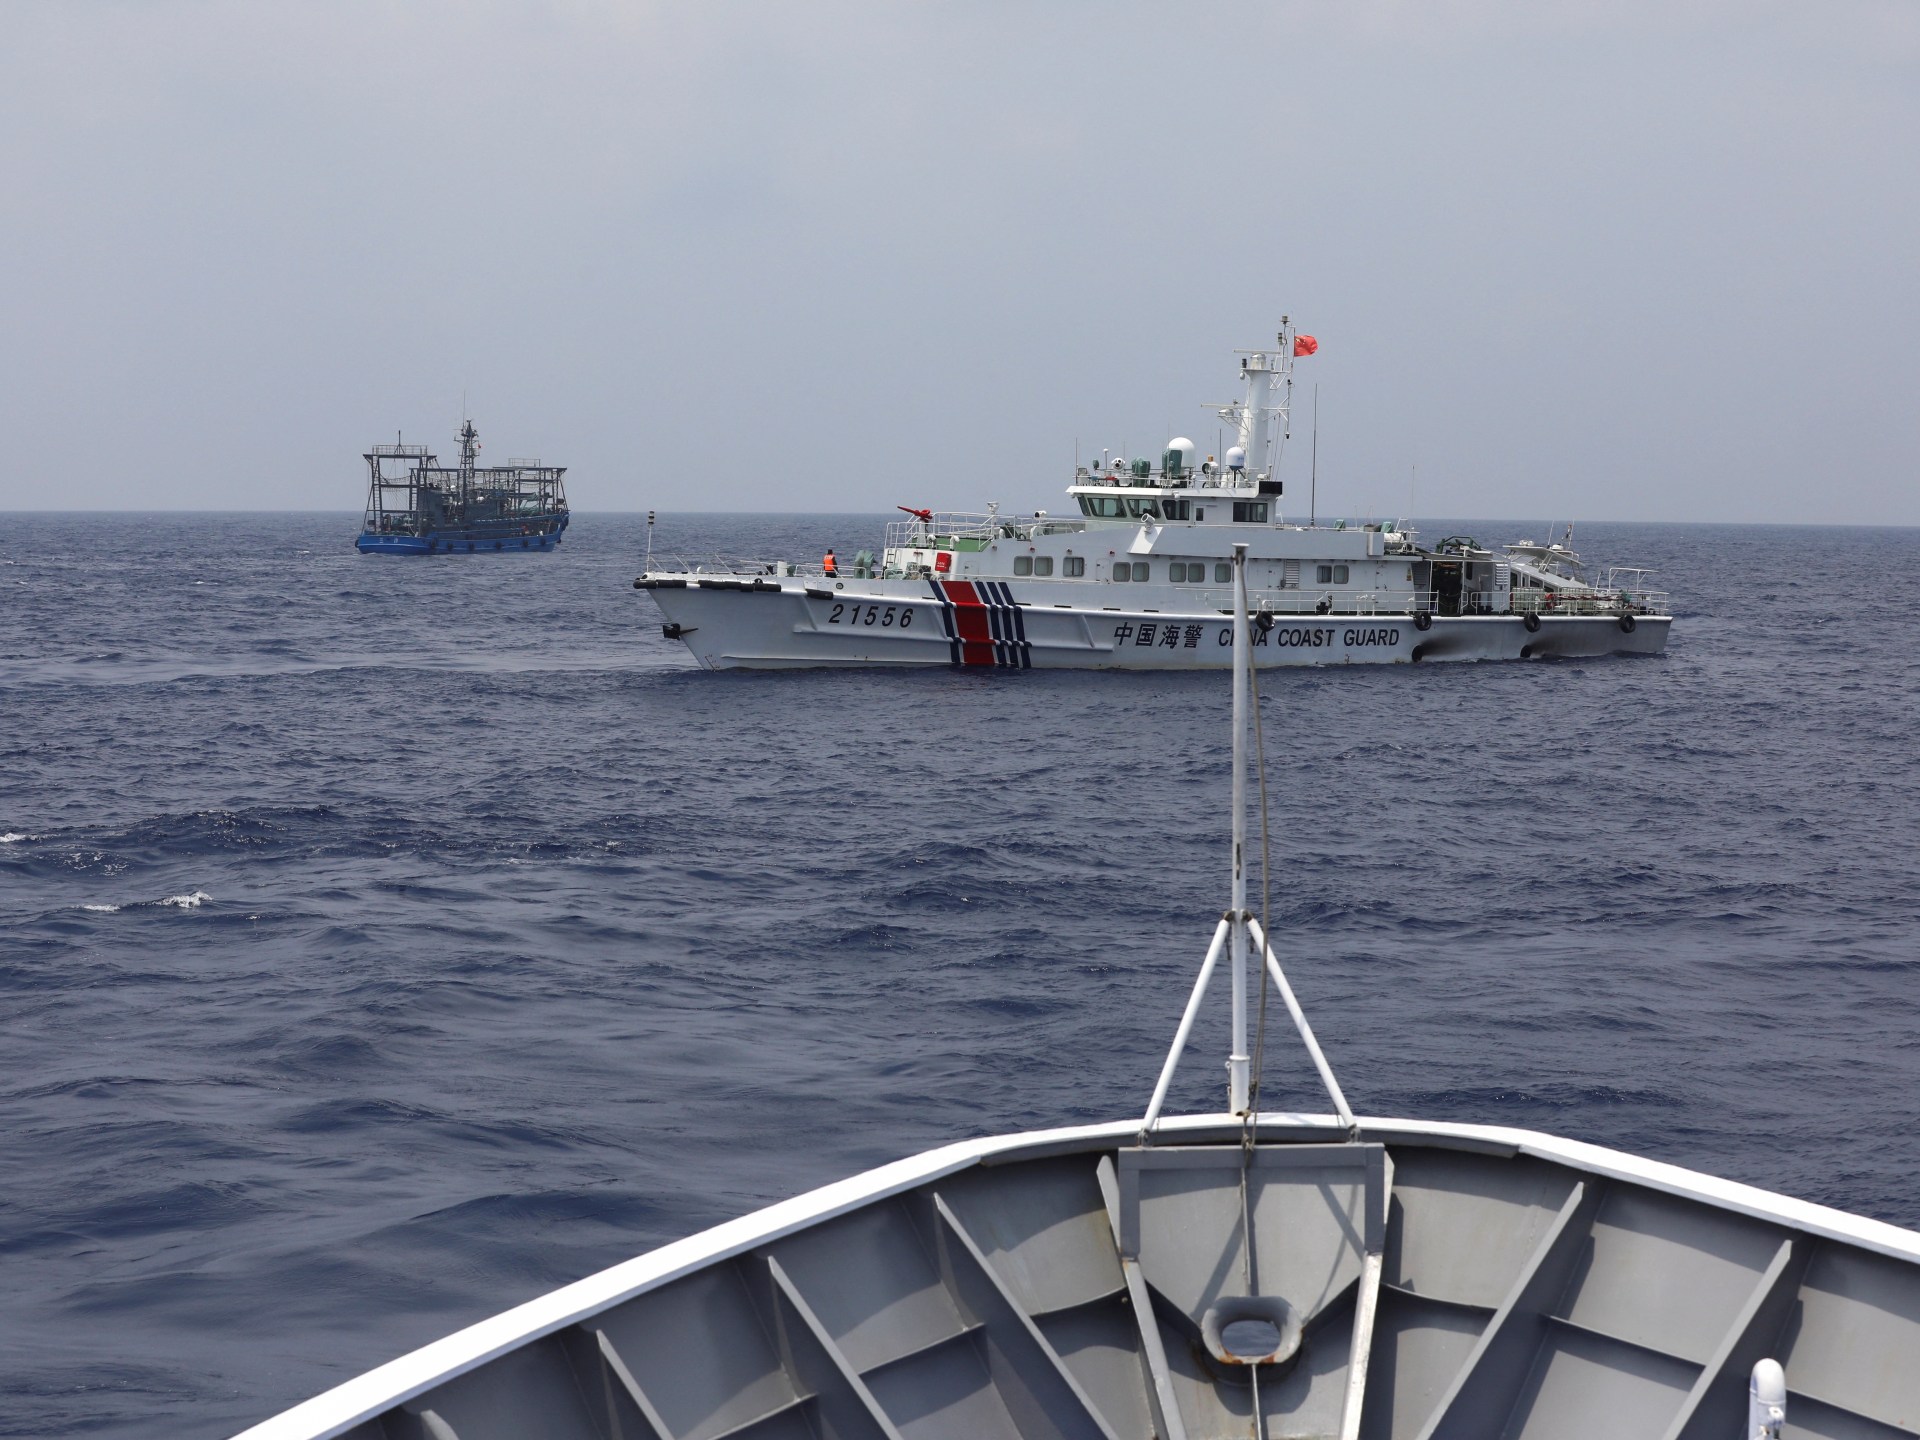 Les Philippines et la Chine s’accusent mutuellement de collisions en mer de Chine méridionale |  Actualités sur la mer de Chine méridionale